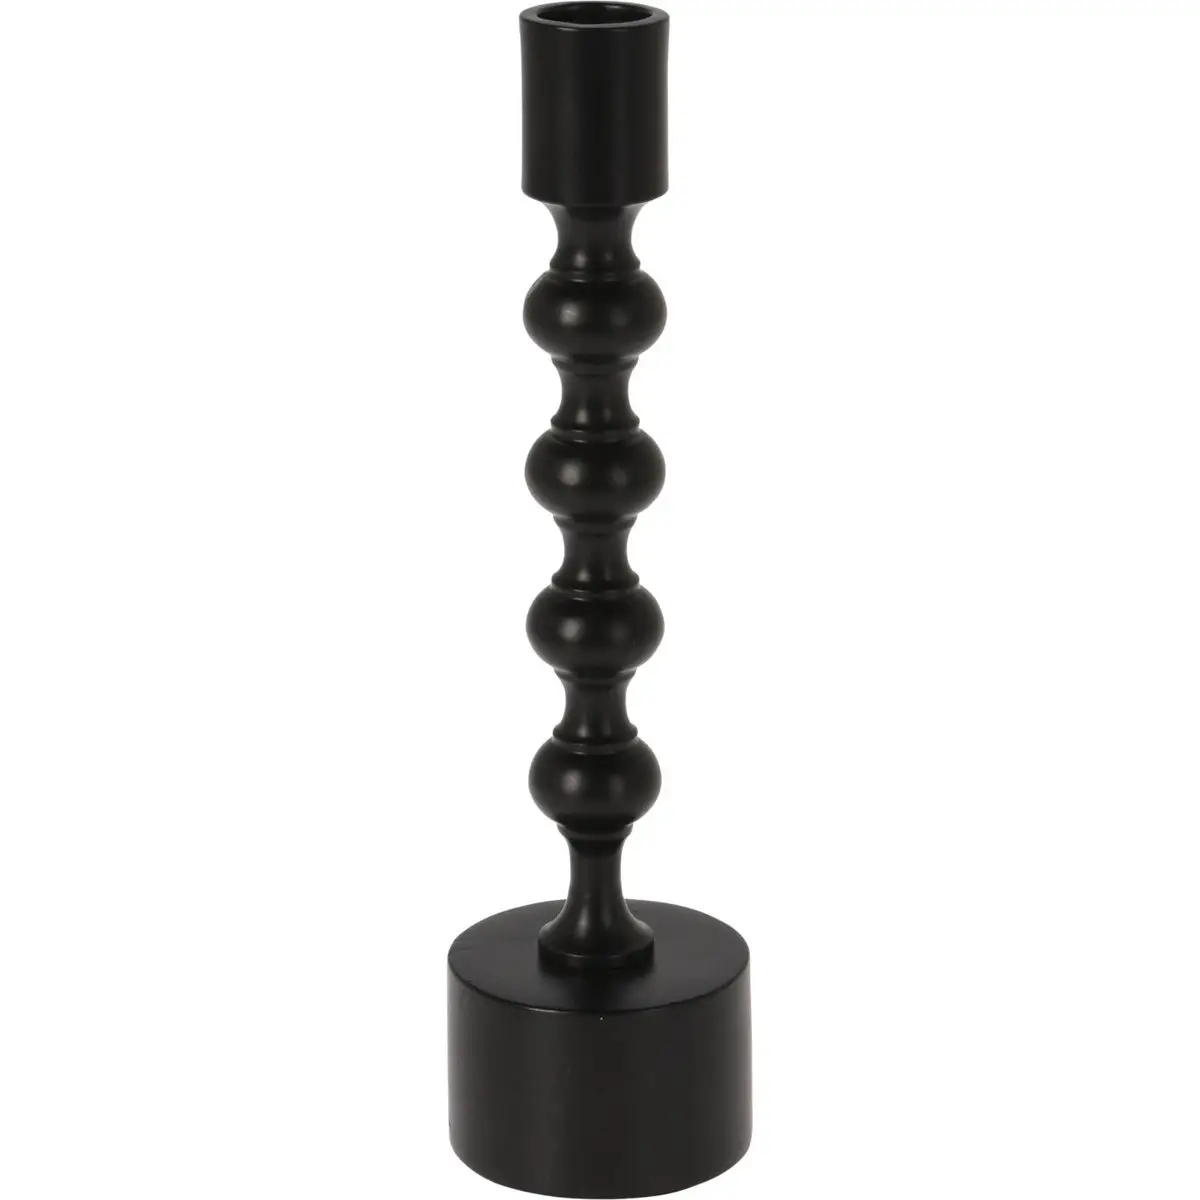 Kerzenst盲nder, schwarz, Aluminium, 23 cm | Kerzenhalter